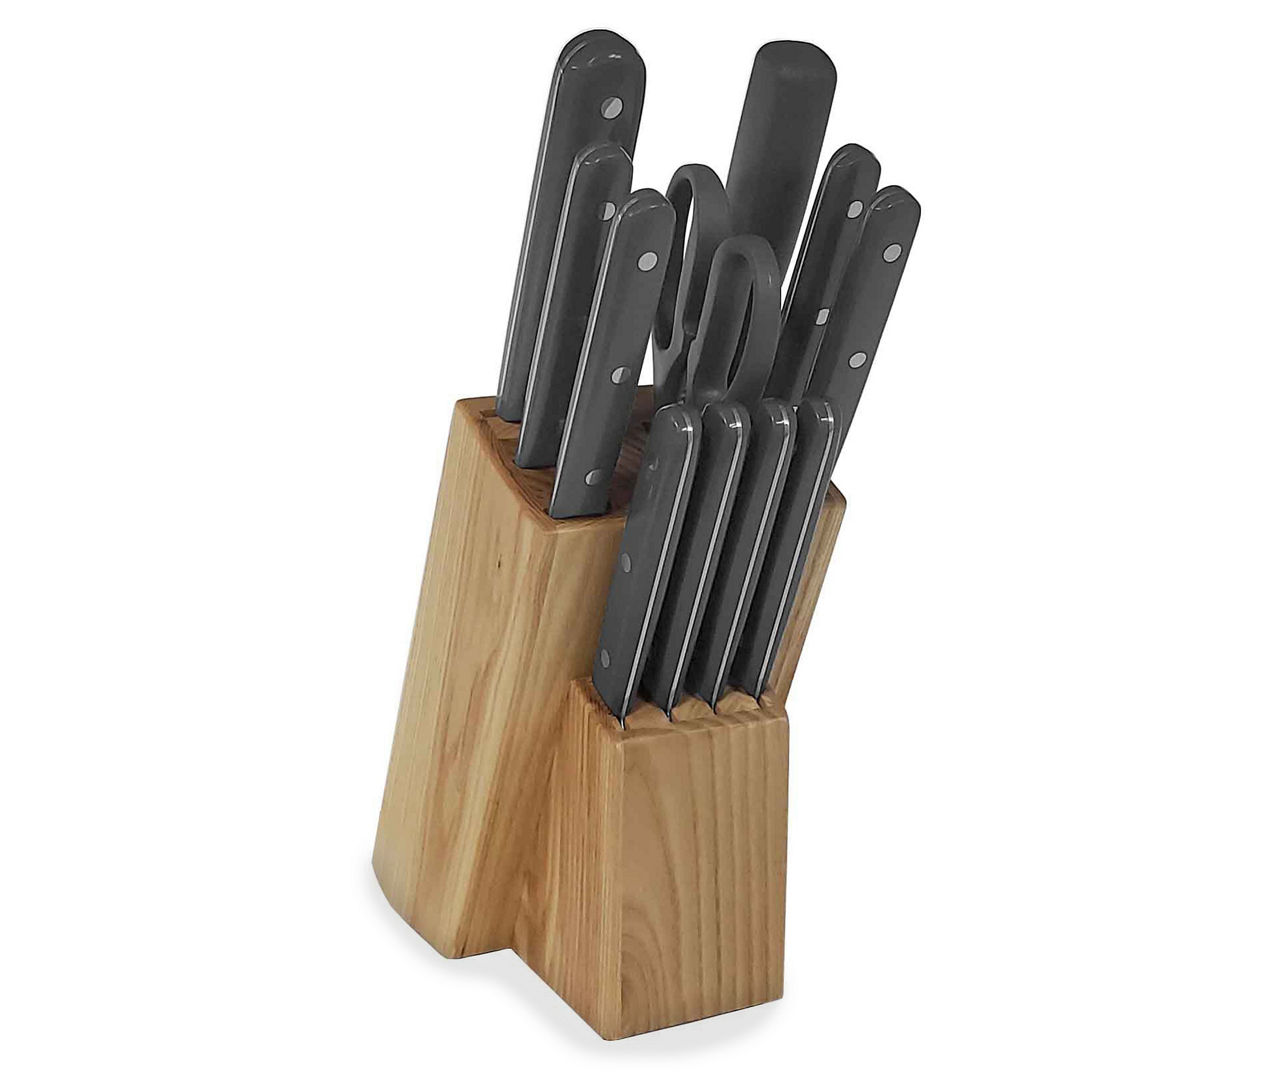 Martha Stewart Everyday 4 Piece Stainless Steel Cutlery Set In